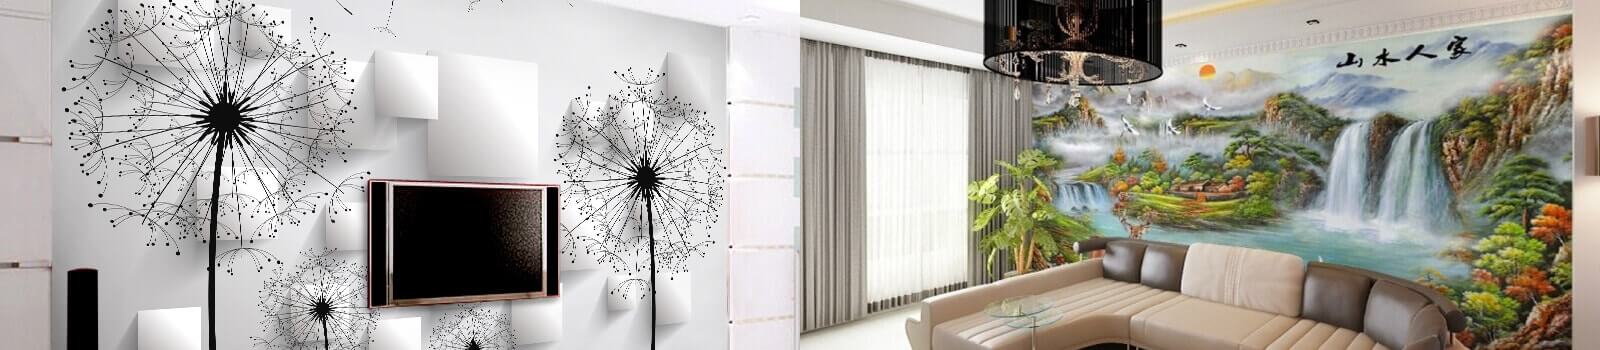 3d 벽지,하얀,인테리어 디자인,특성,커튼,방